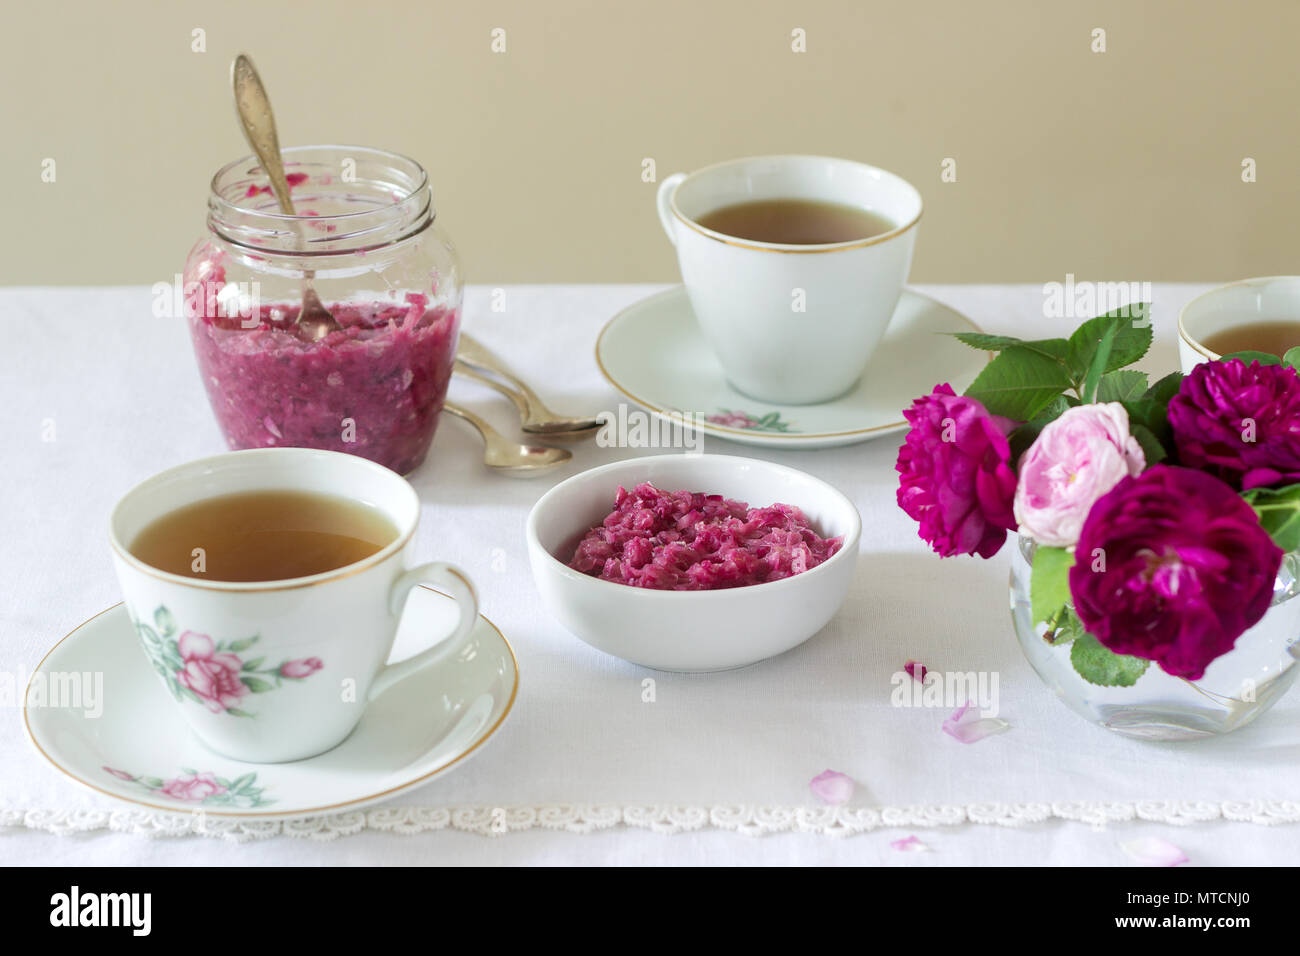 Stau in die Blütenblätter der Damaskus Rose, eine Tasse grünen Tee und eine Vase mit Rosen auf einem Leuchttisch. Rustikaler Stil, selektiven Fokus. Stockfoto